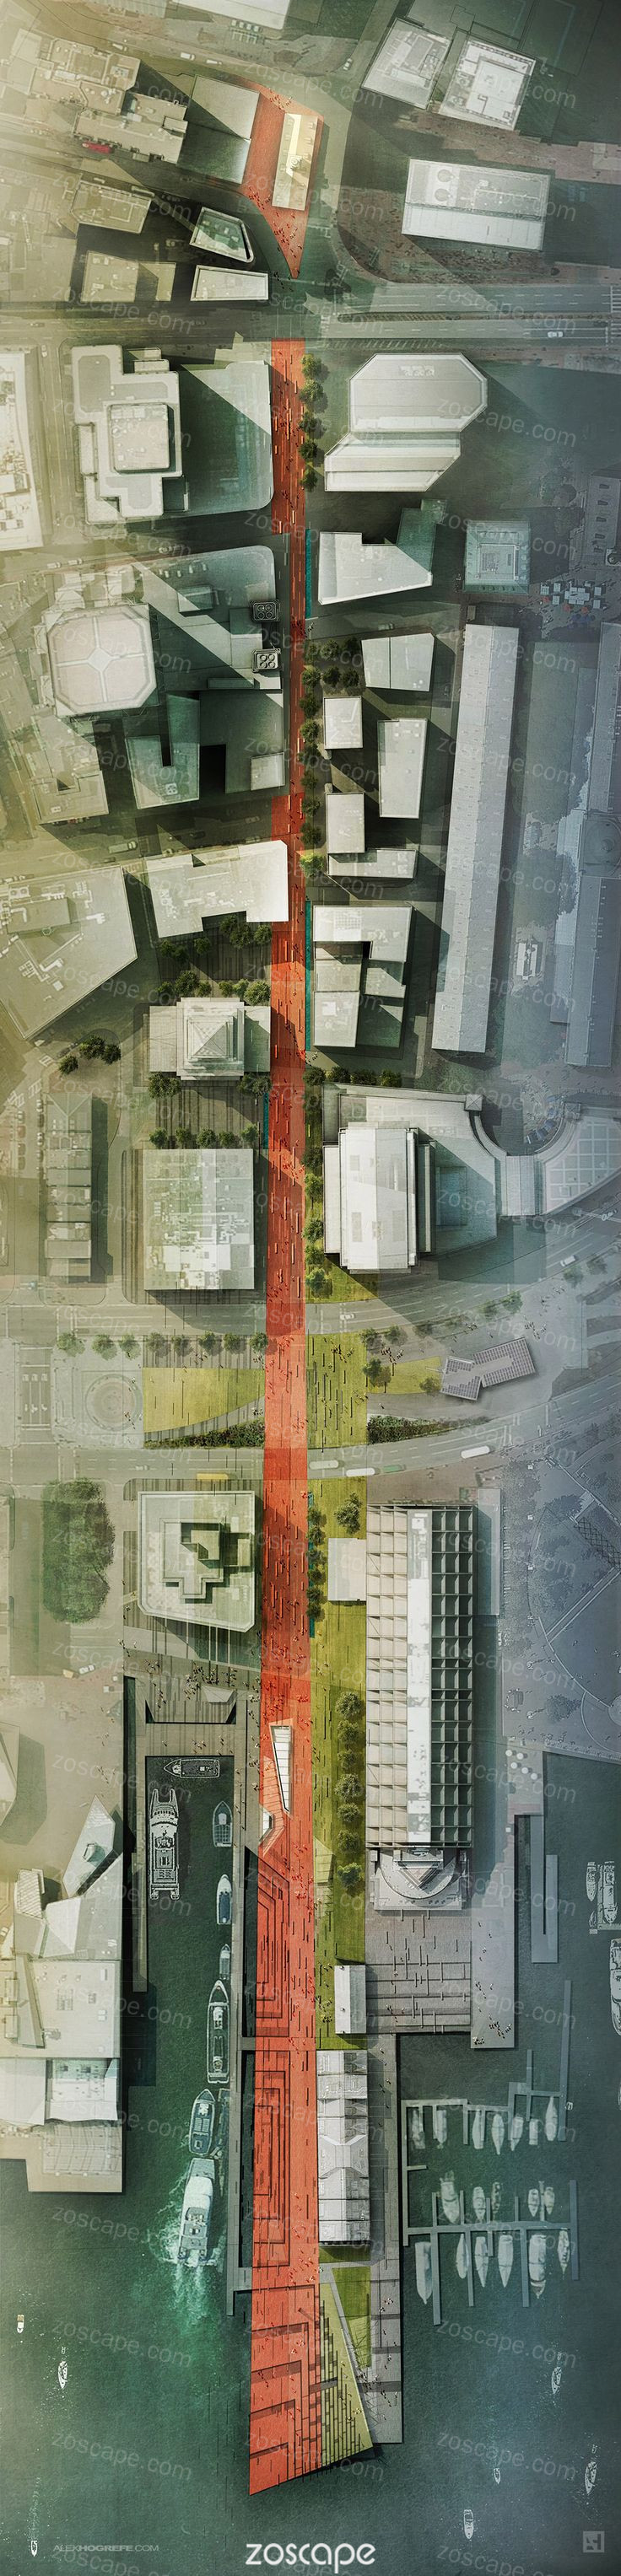 城市道路绿地景观规划设计平面图